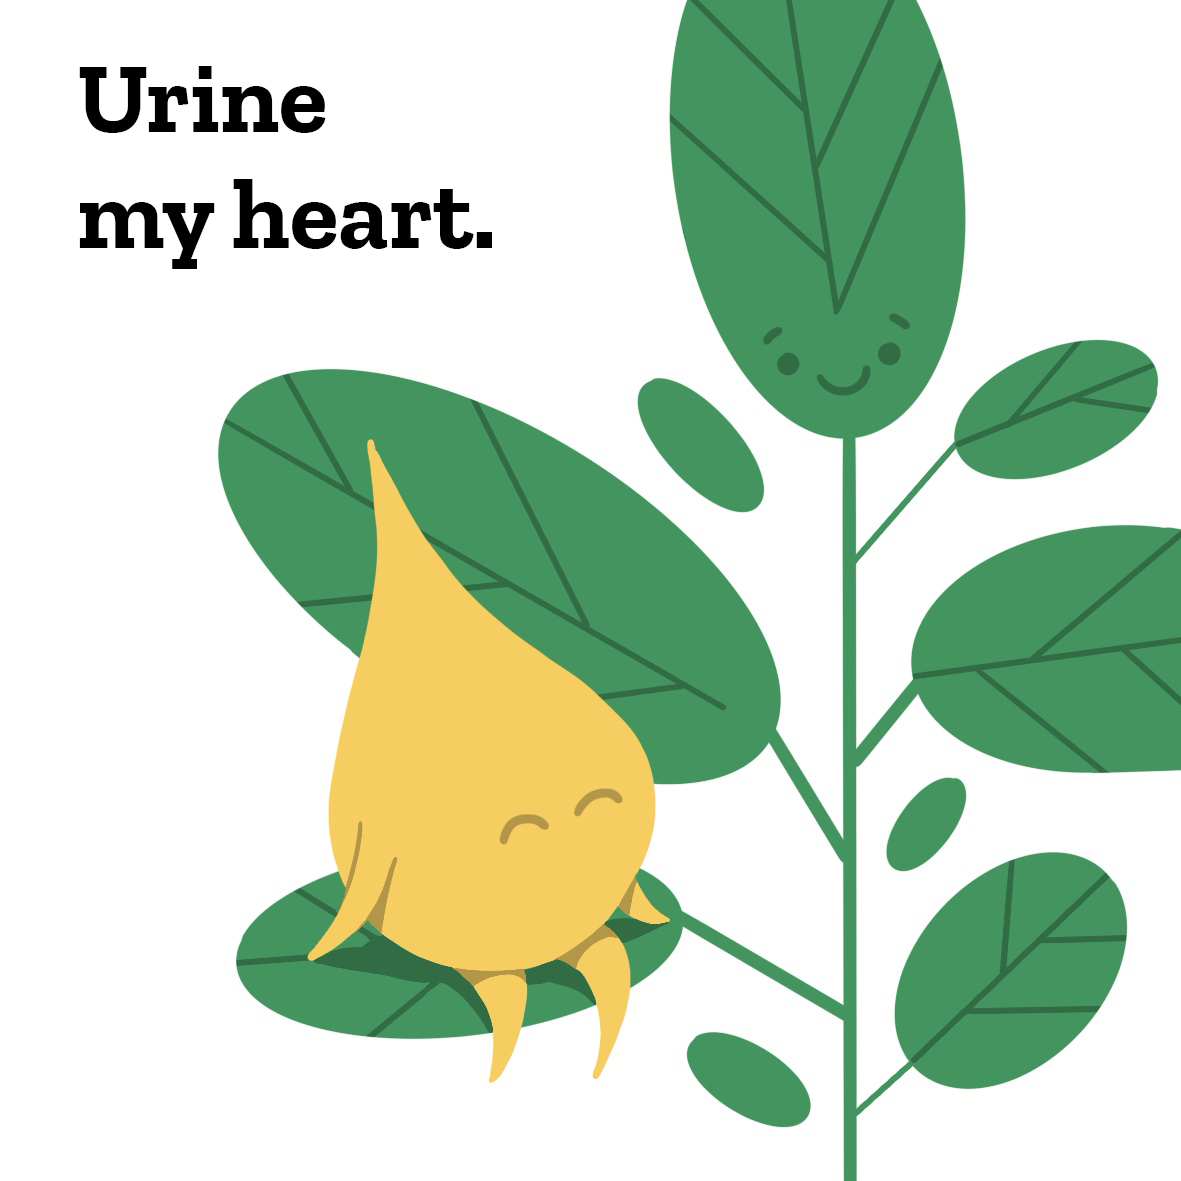 Ein Urintropfen sitzt auf einer Pflanze und sagt „Urine my heart.“